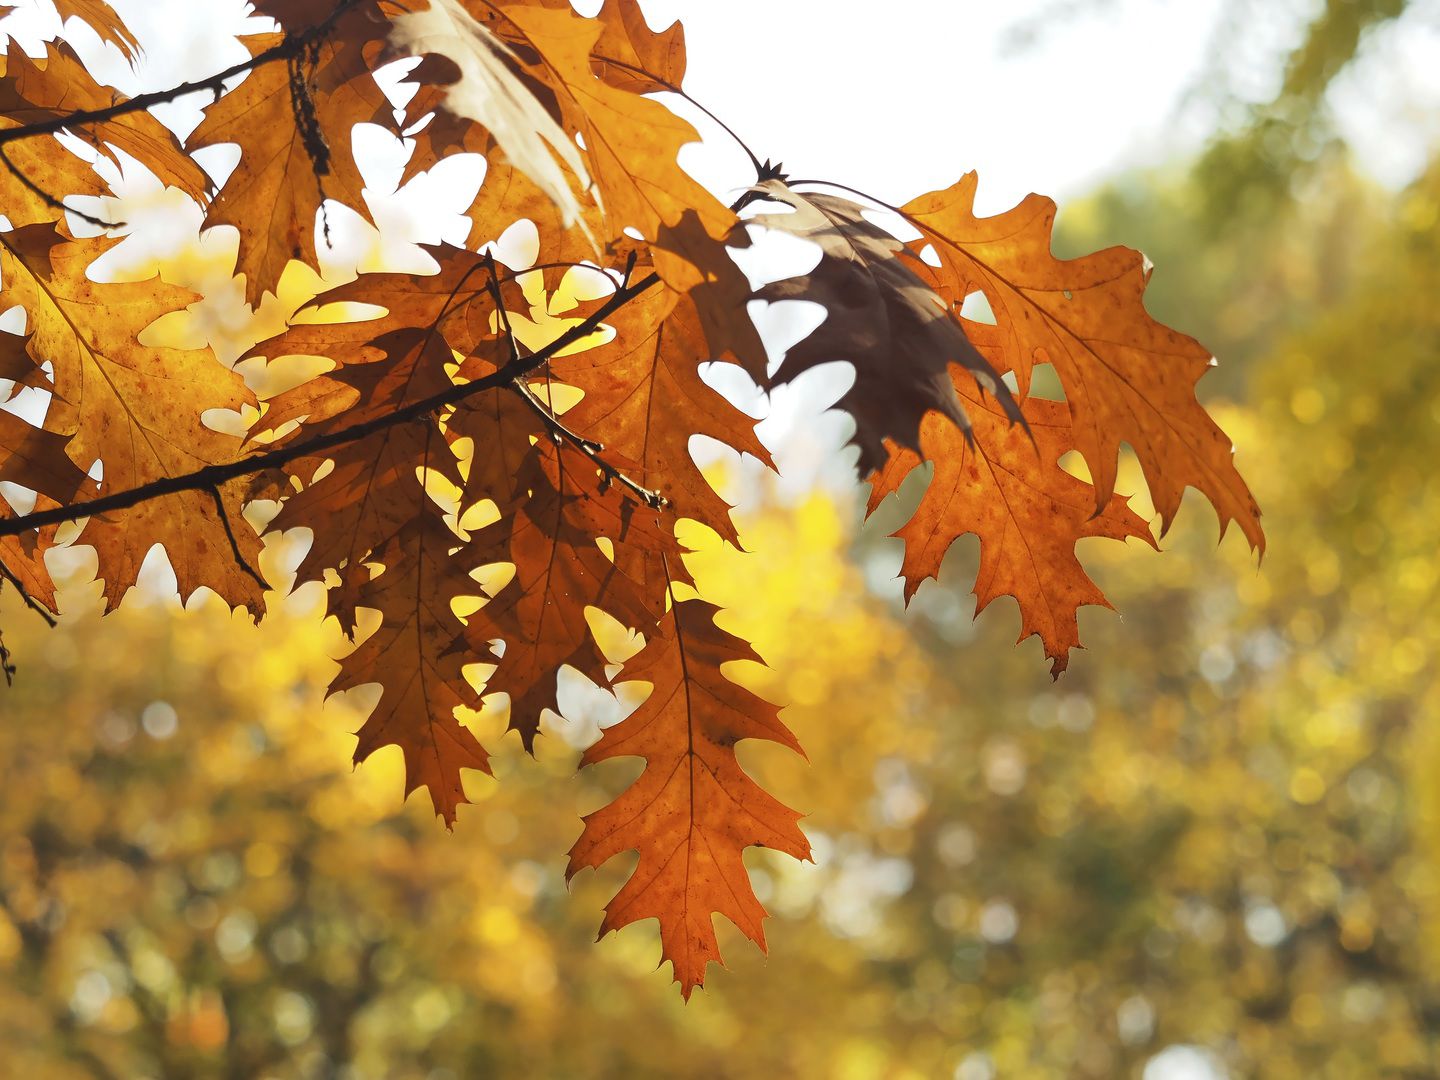 Las hojas anaranjadas son un rasgo distintivo de otoño (Foto: Pxhere)